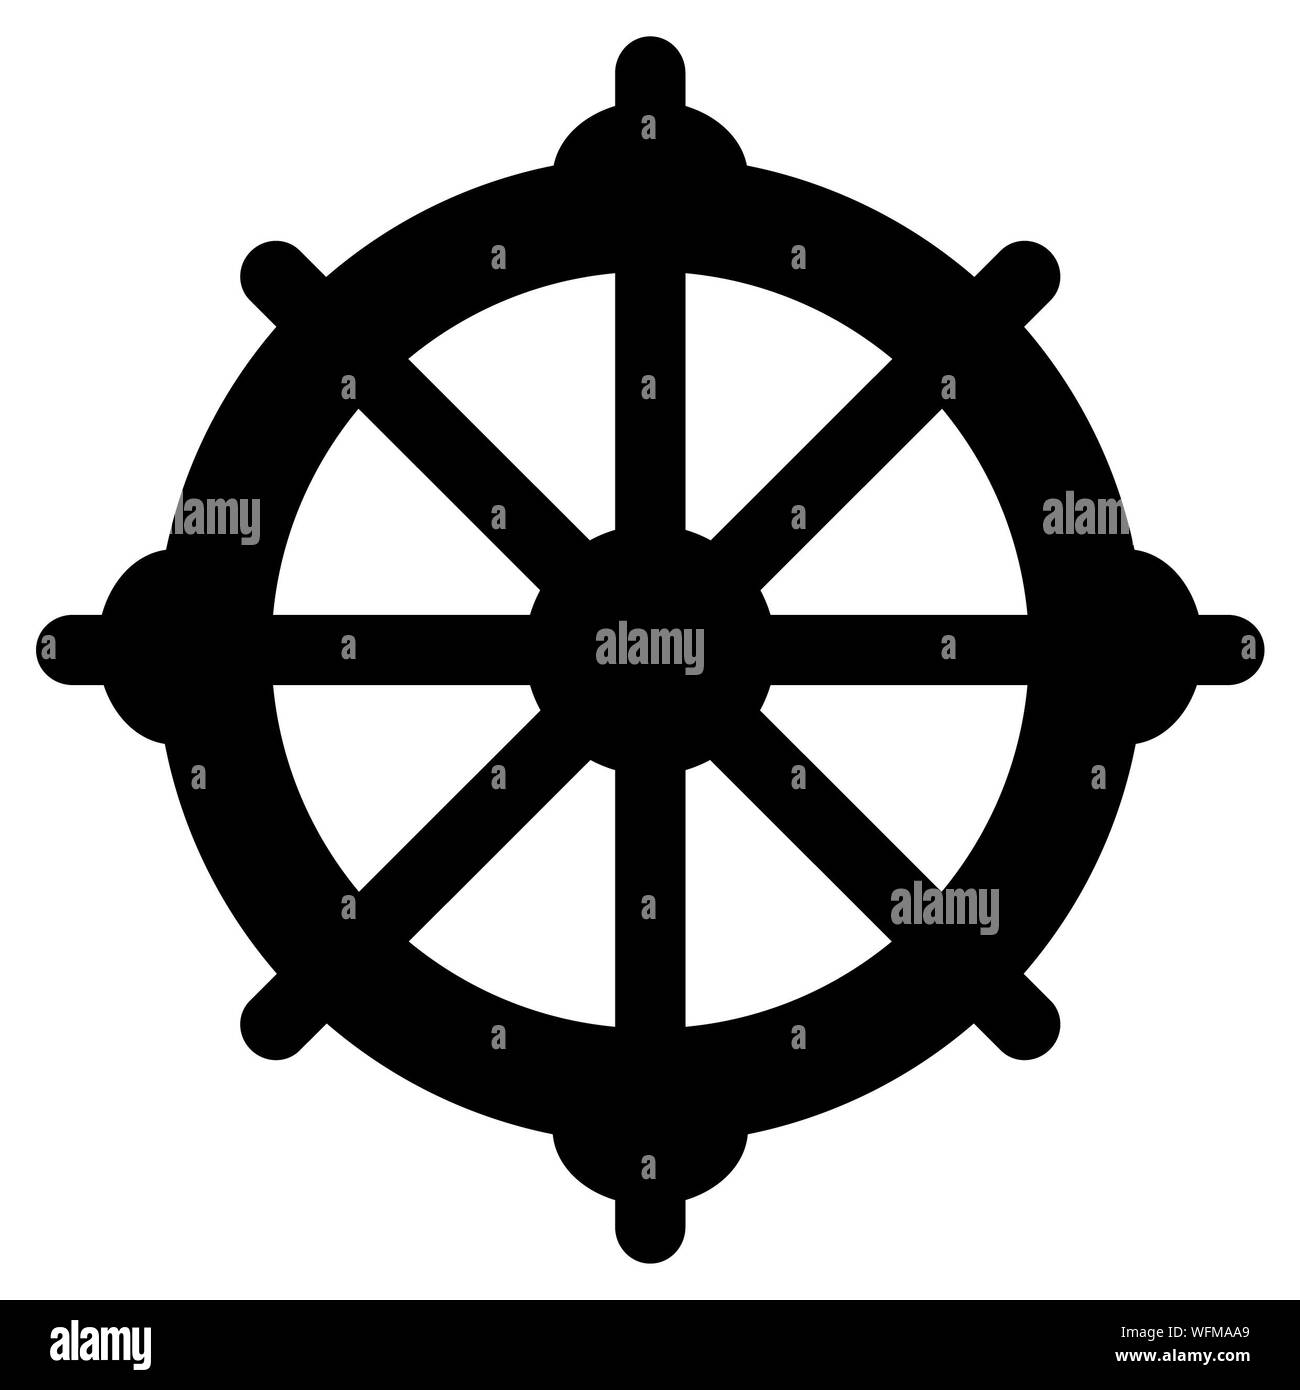 Eight-spoke Wheel of Dharma on a white background. Stock Photo